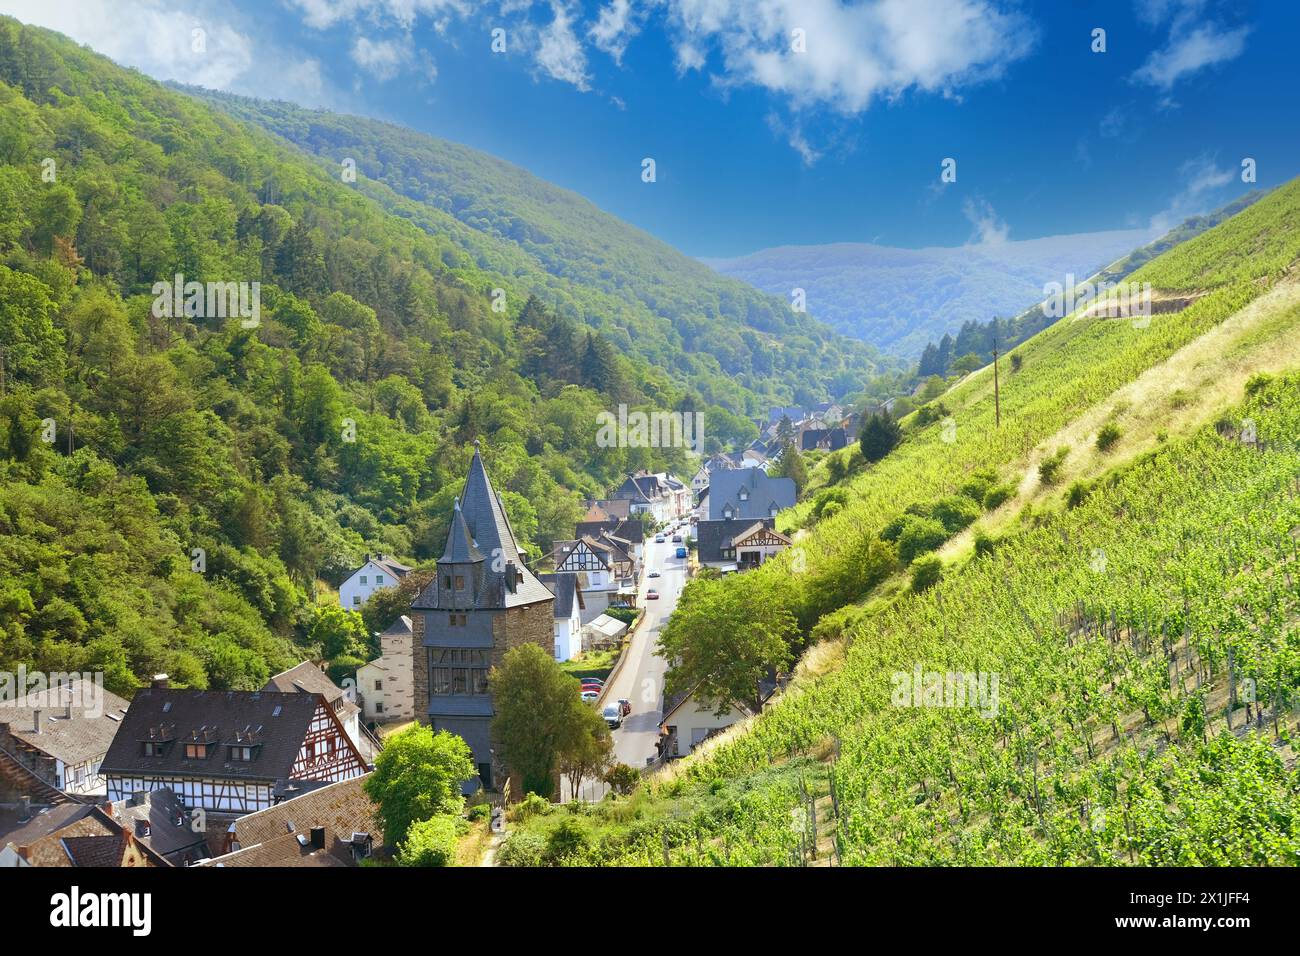 Route étroite dans la gorge parmi les vieilles maisons, tours de guet et vignobles dans la vallée du Rhin moyen au-dessus de la ville de Bacharach dans le district de Mayence-Bingen en Rhénanie- Banque D'Images